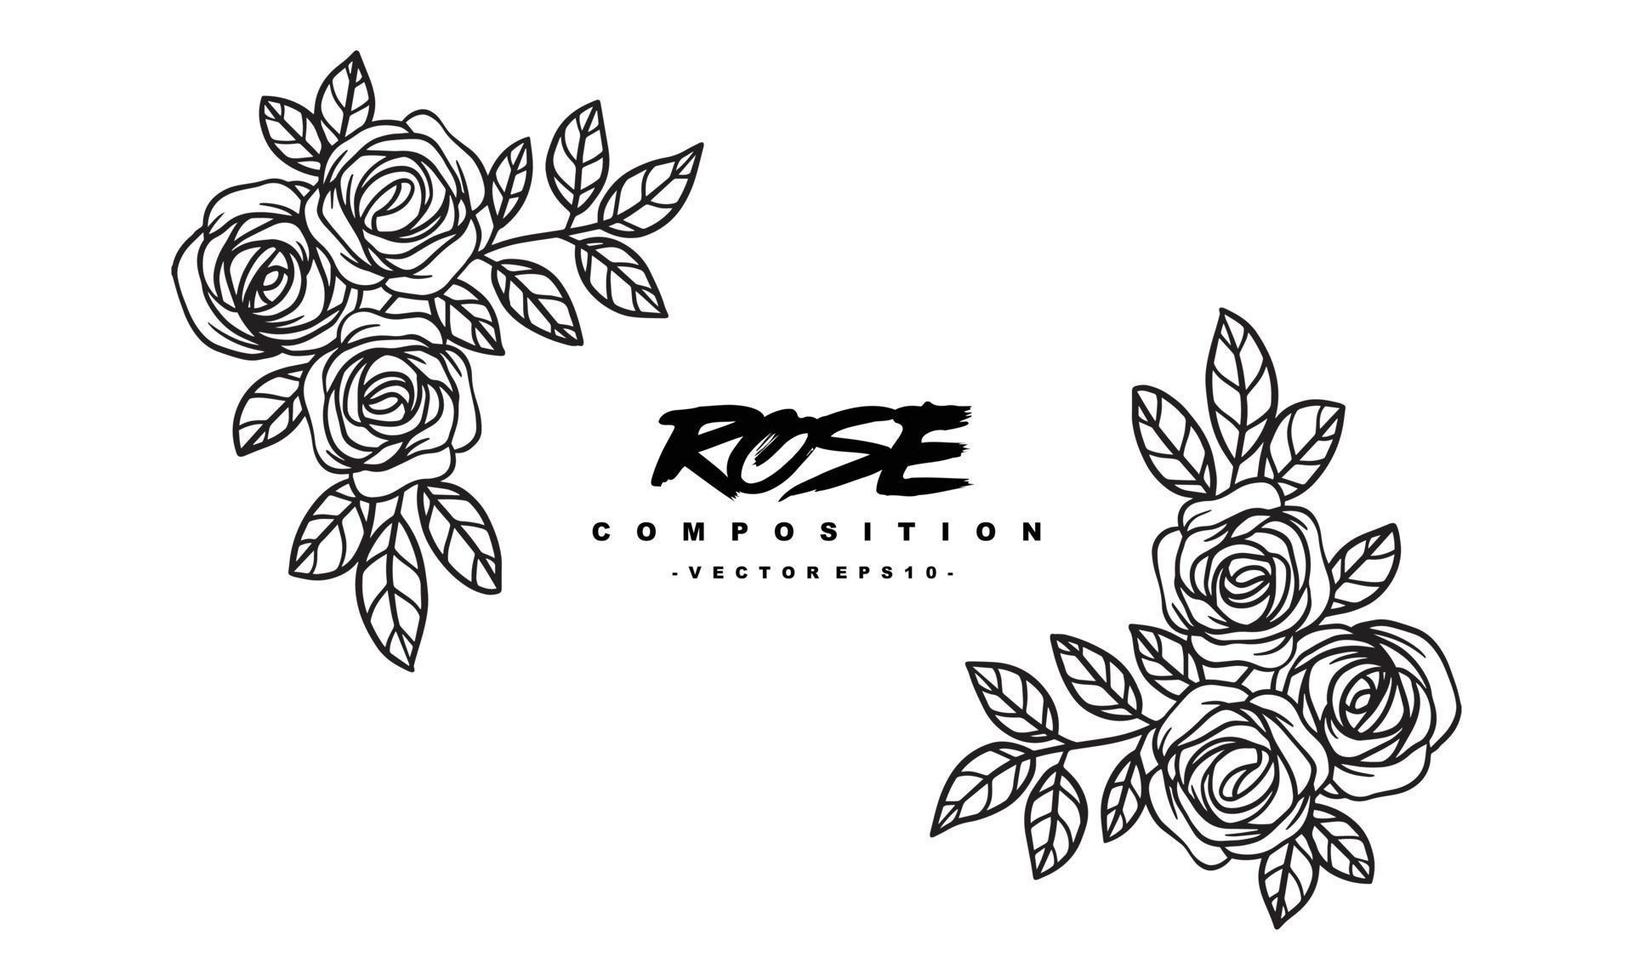 roskompositionsarrangemang för bröllopsinbjudningsdesign, växter och blommor för elegant bokstäver, handritad vektorillustration för romantisk och vintagedesign vektor